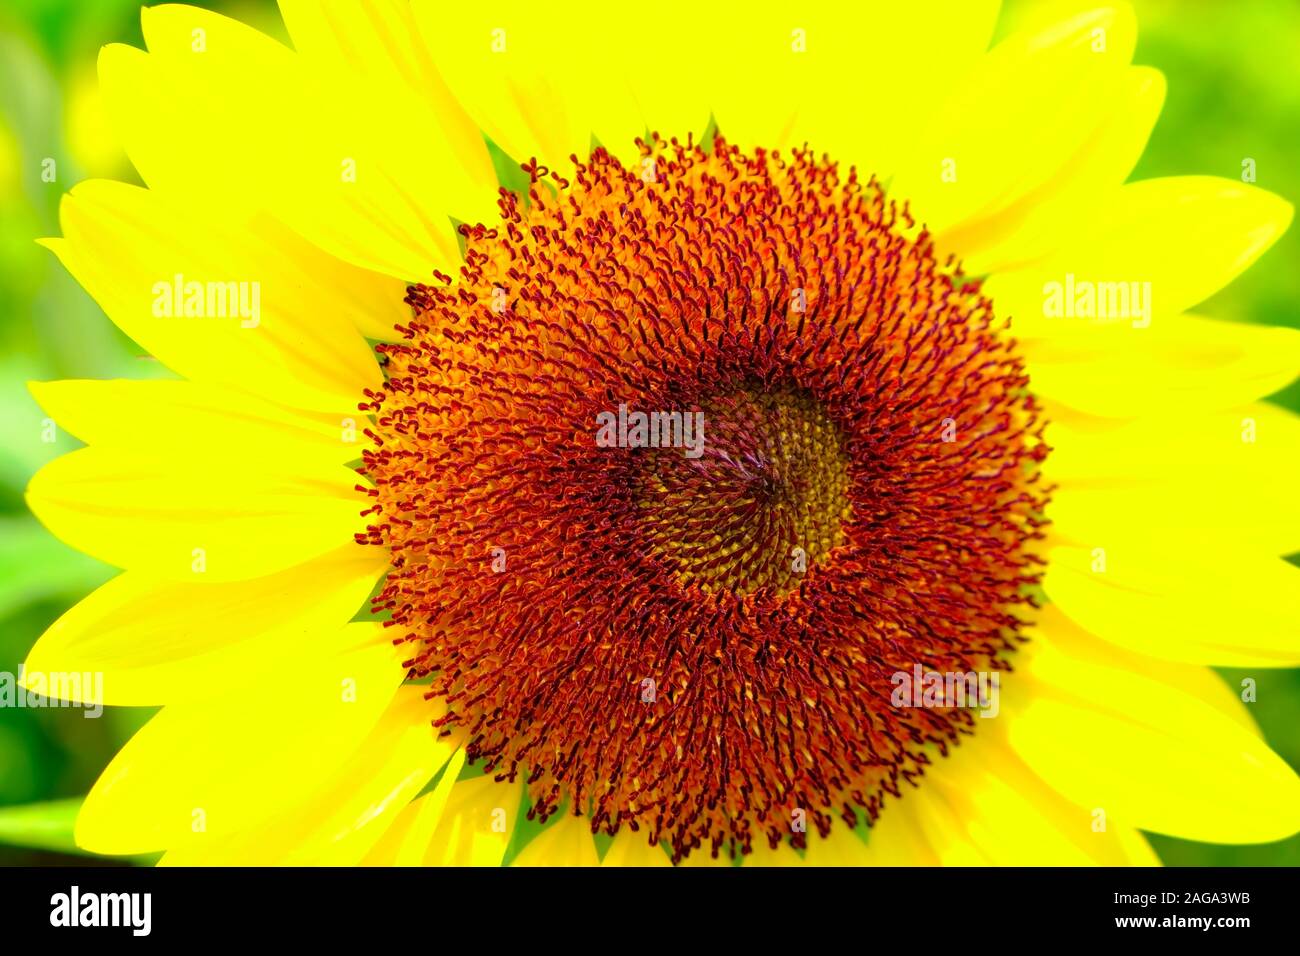 Ein großes helles Sonnenblume mit Blüten, ähnlich einer solar Halo und eine orange Core im Fokus. Nahaufnahme des Blütenkorbes. Stockfoto